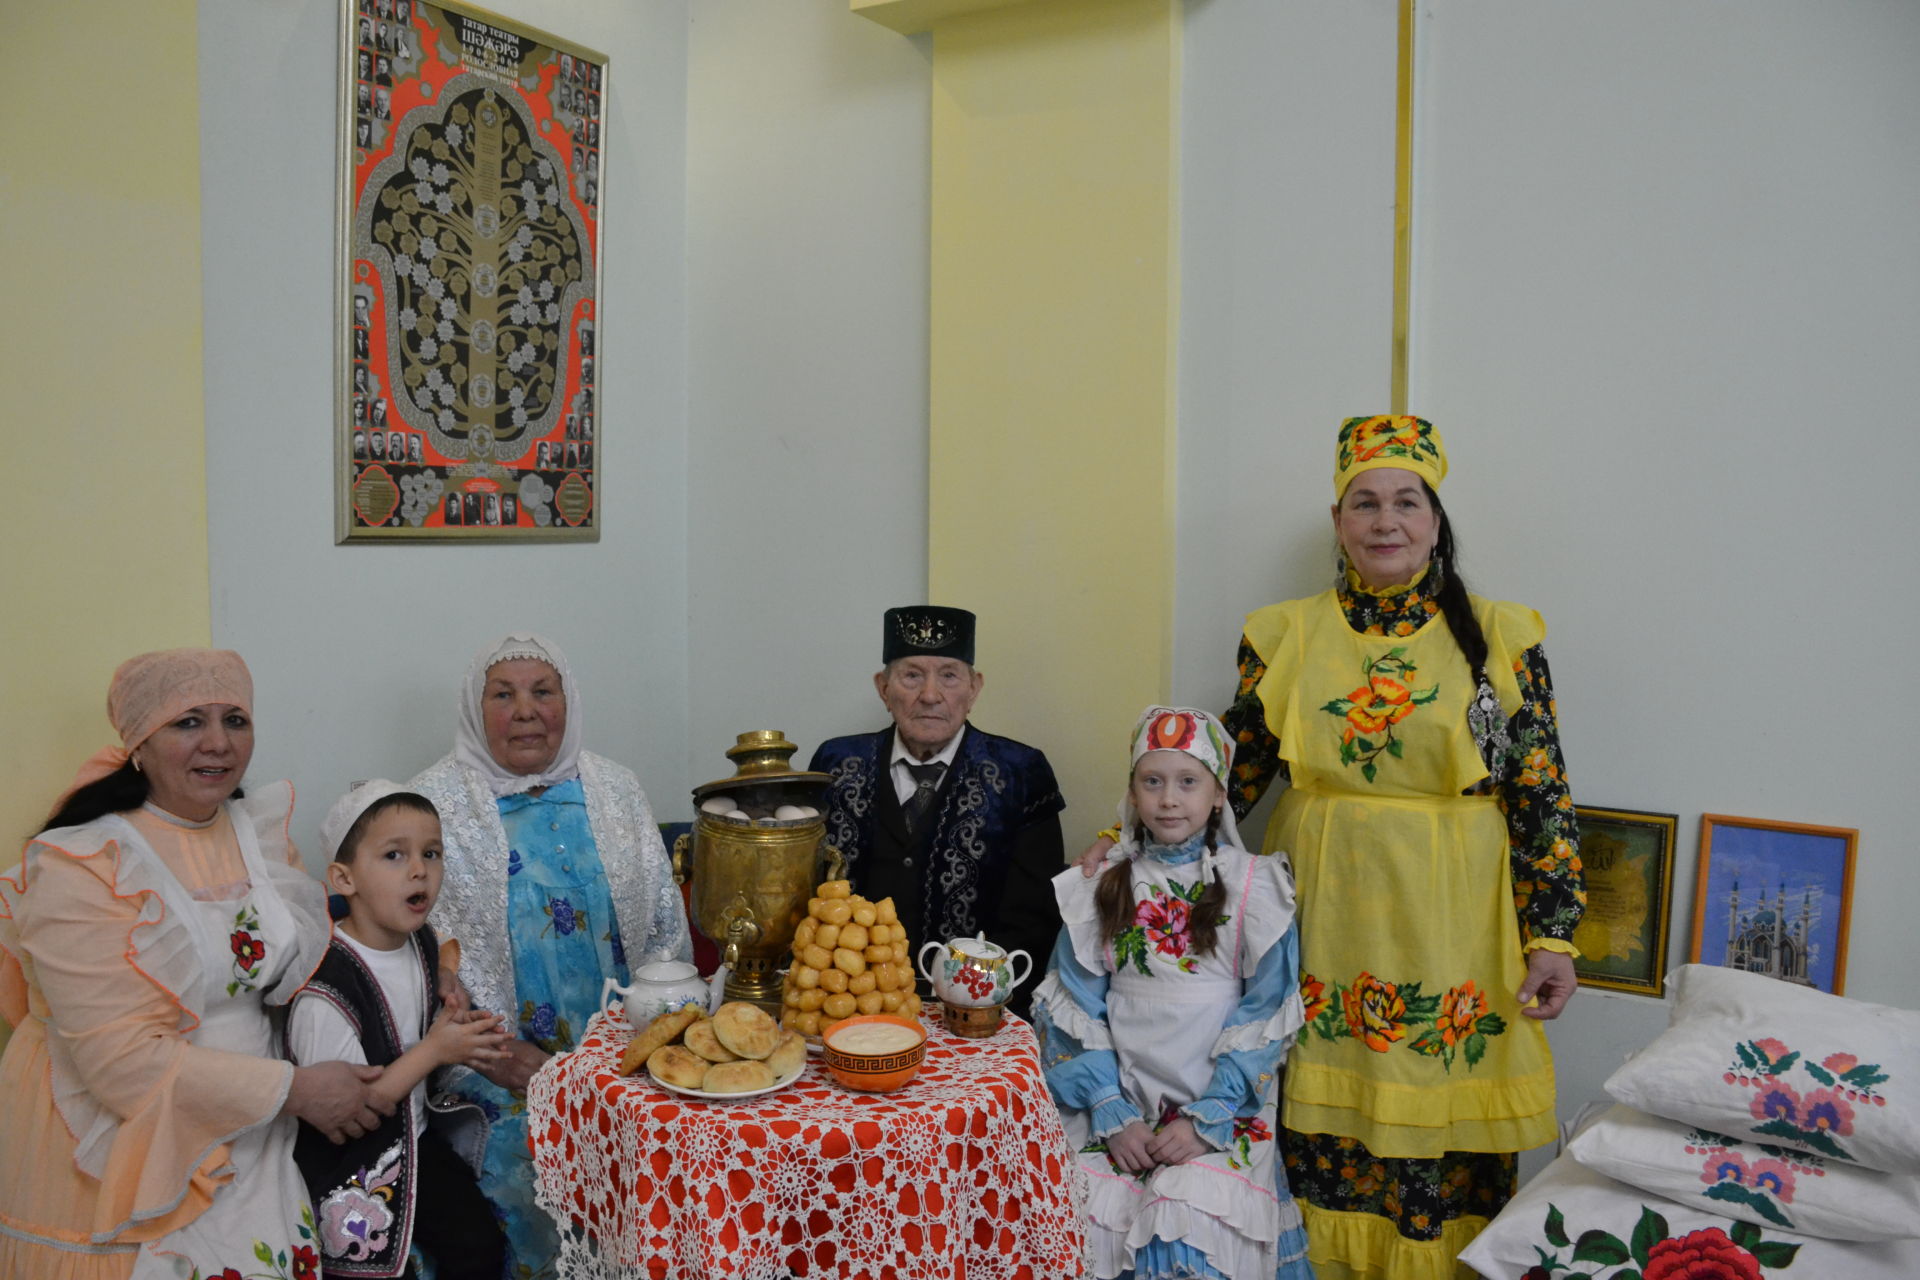 Василь Шайхразиев: “У представителя каждой национальности, проживающего на территории Татарстана, должна быть возможность изучать родной язык”